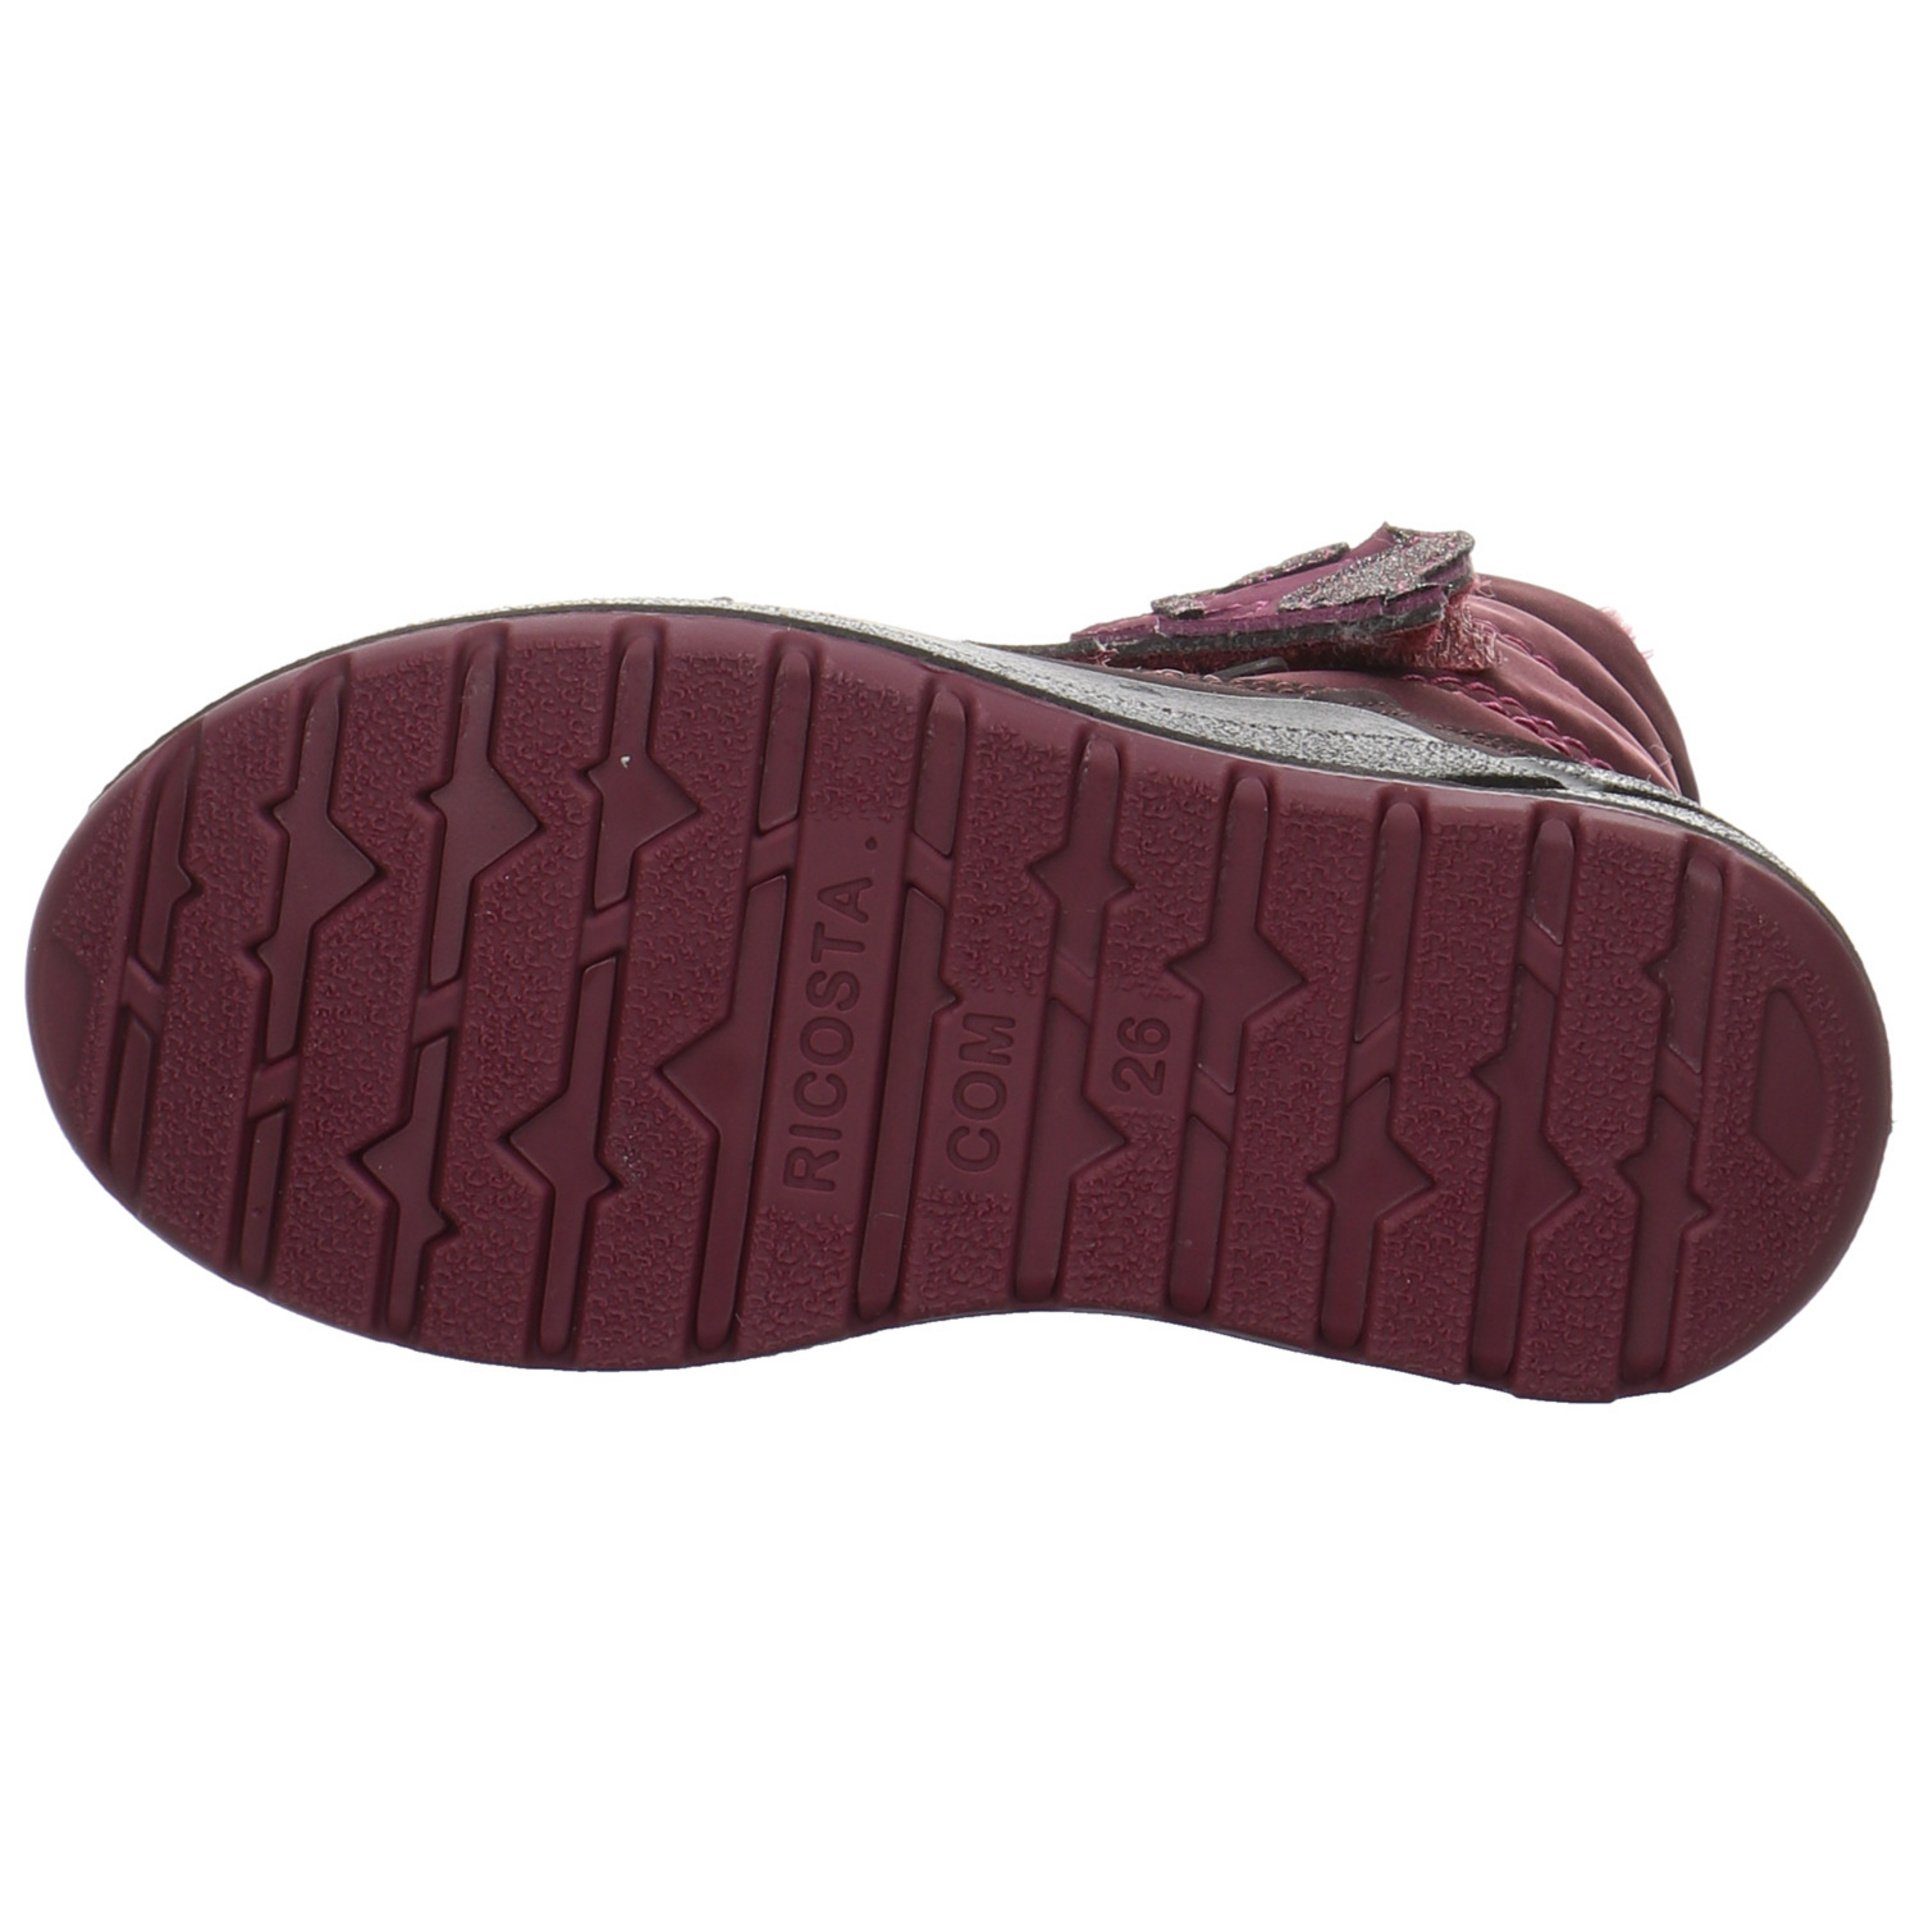 Boots Garei Textil uni (380) Stiefel Textil brombeer Ricosta